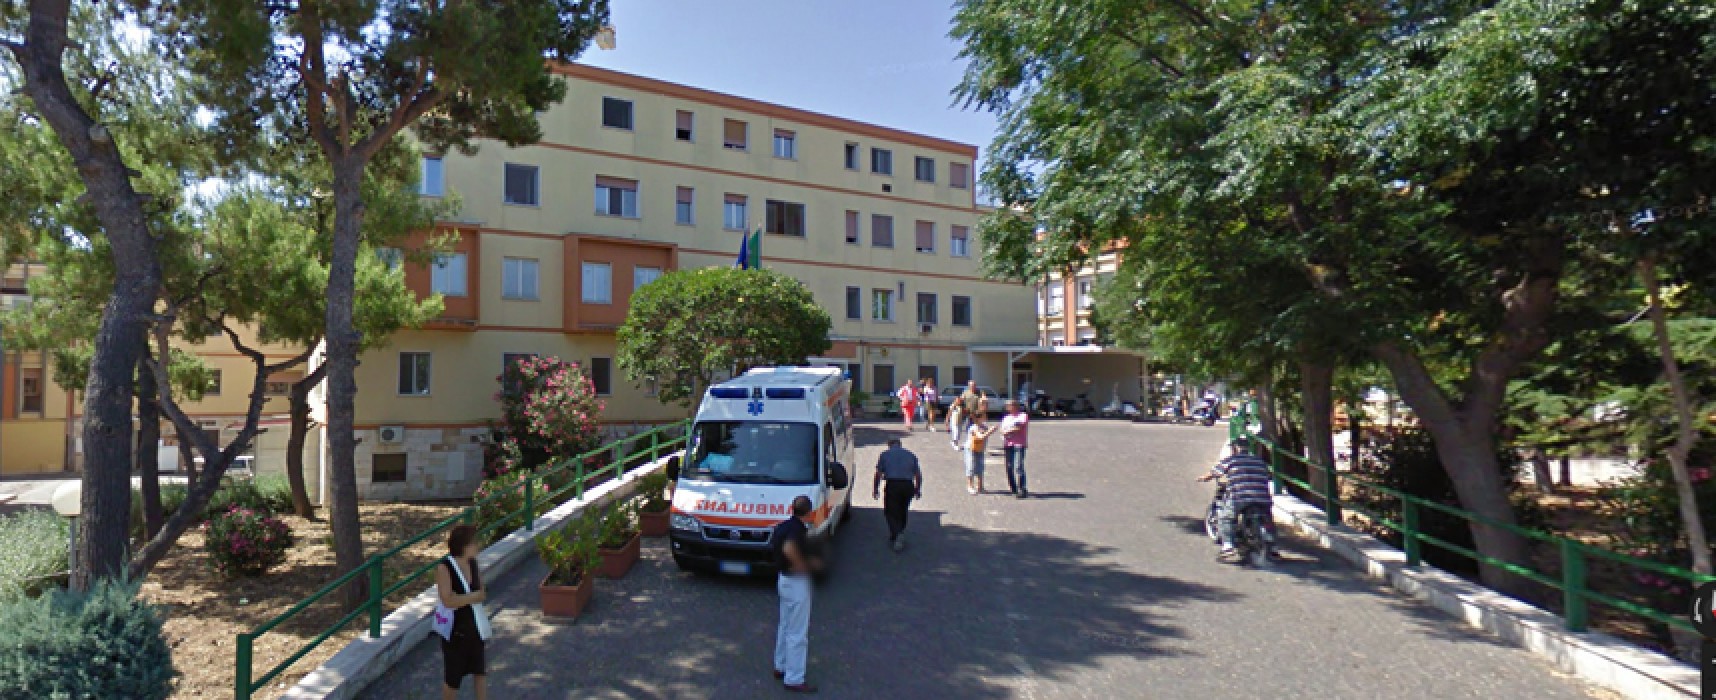 Il nosocomio di Bisceglie tra i nove ospedali pugliesi promossi dal Ministero